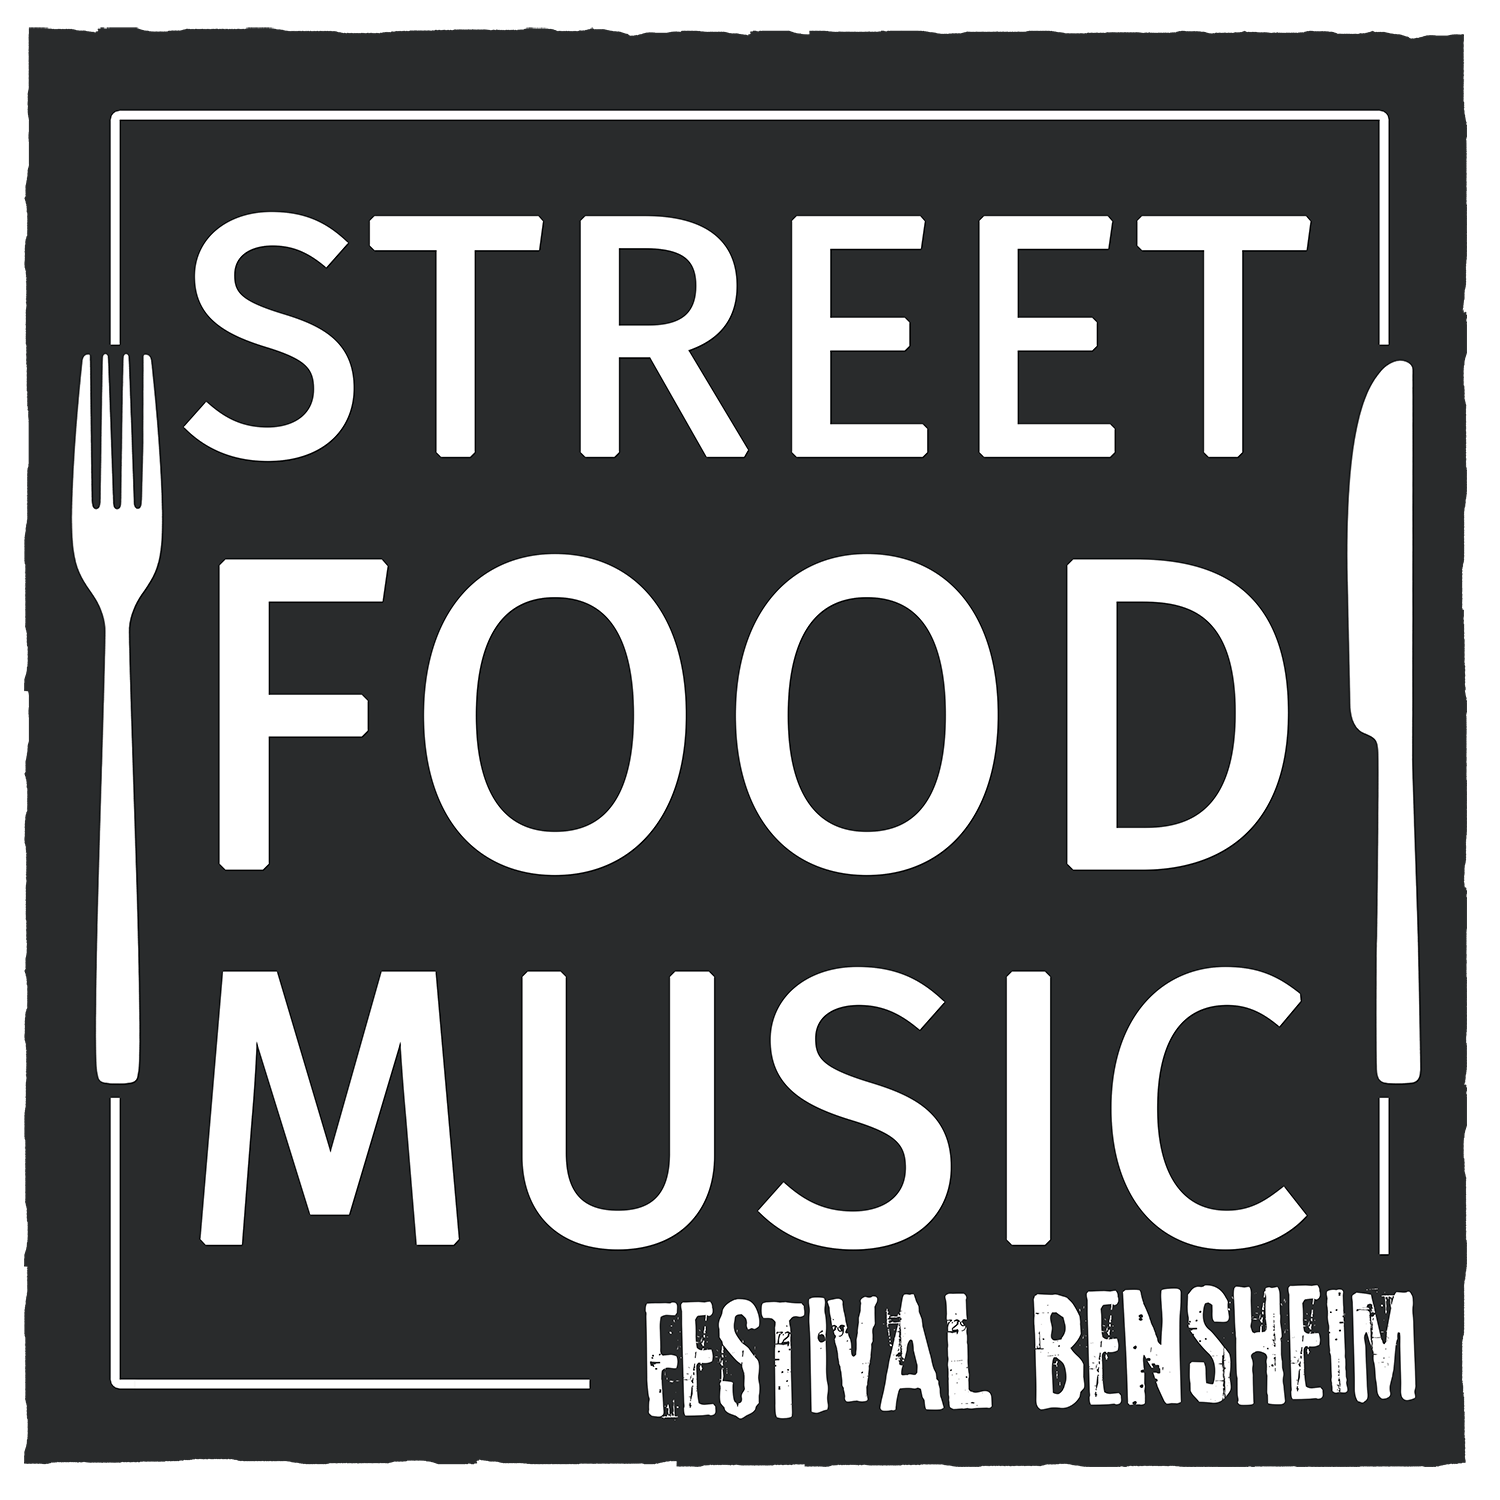 Street Food & Music Festival Bensheim